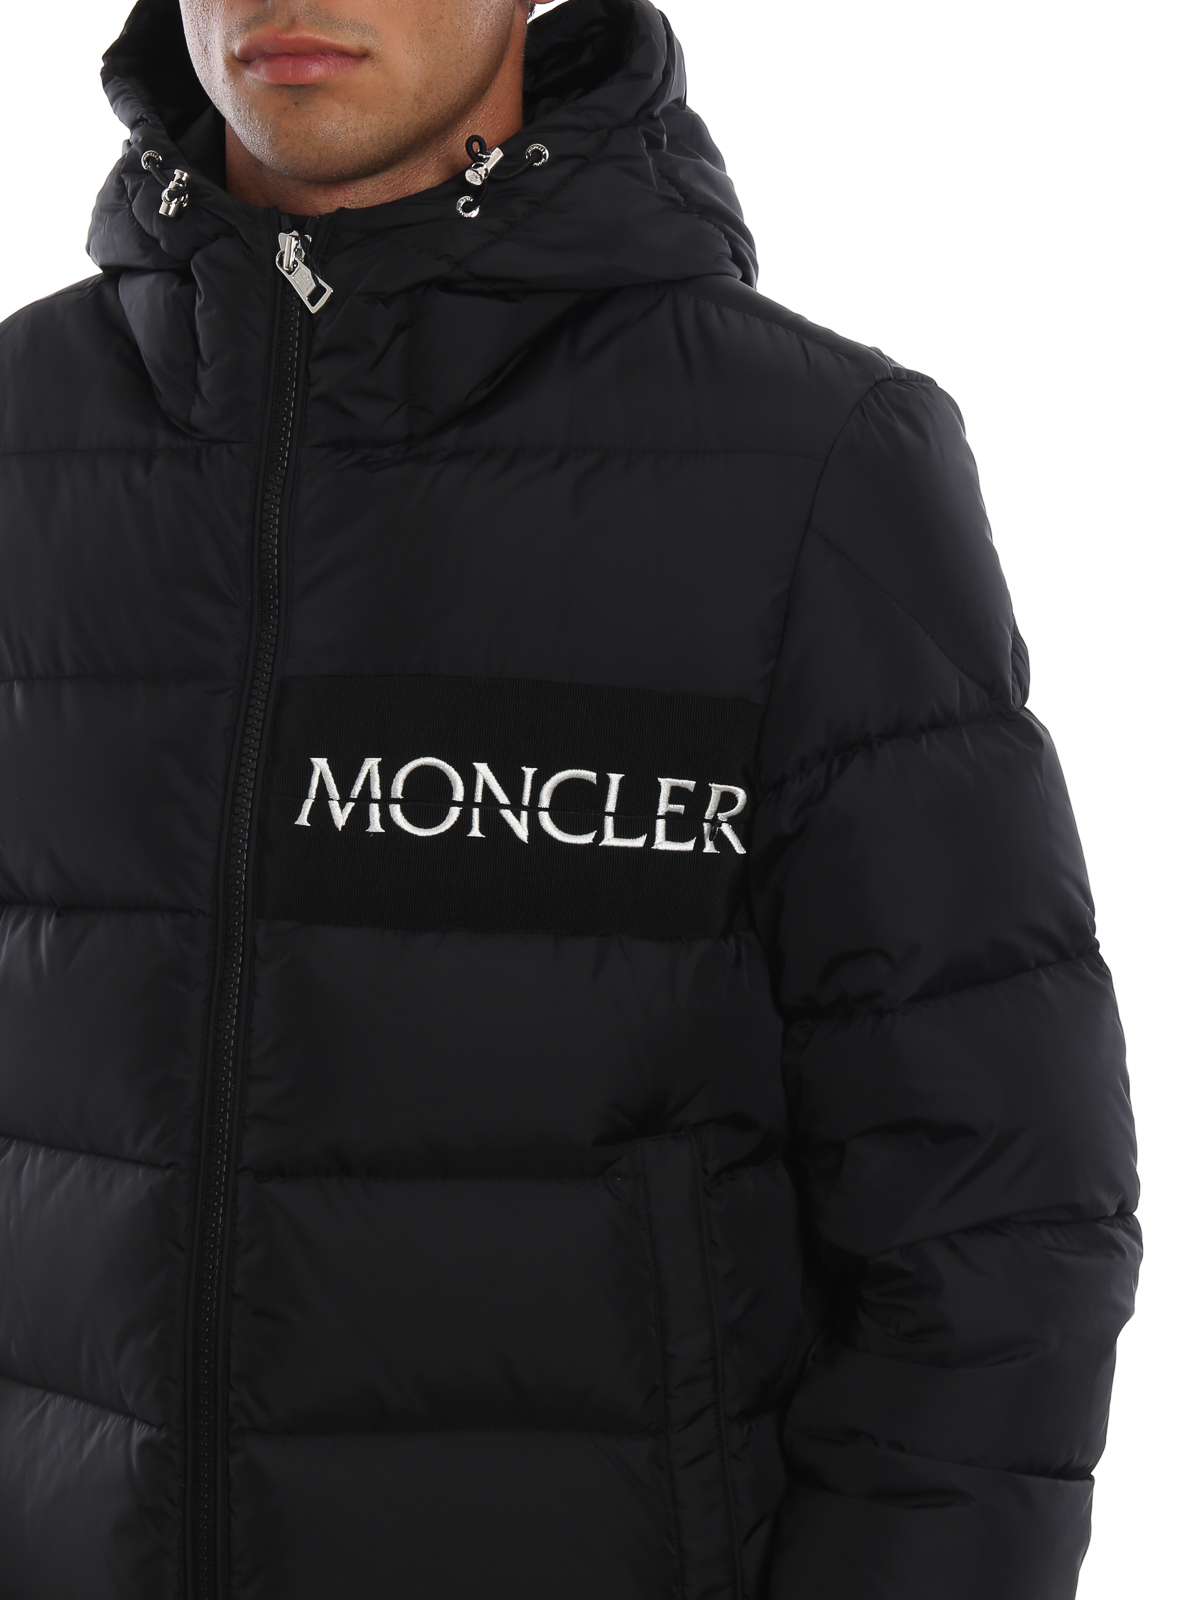 moncler padded logo jacket